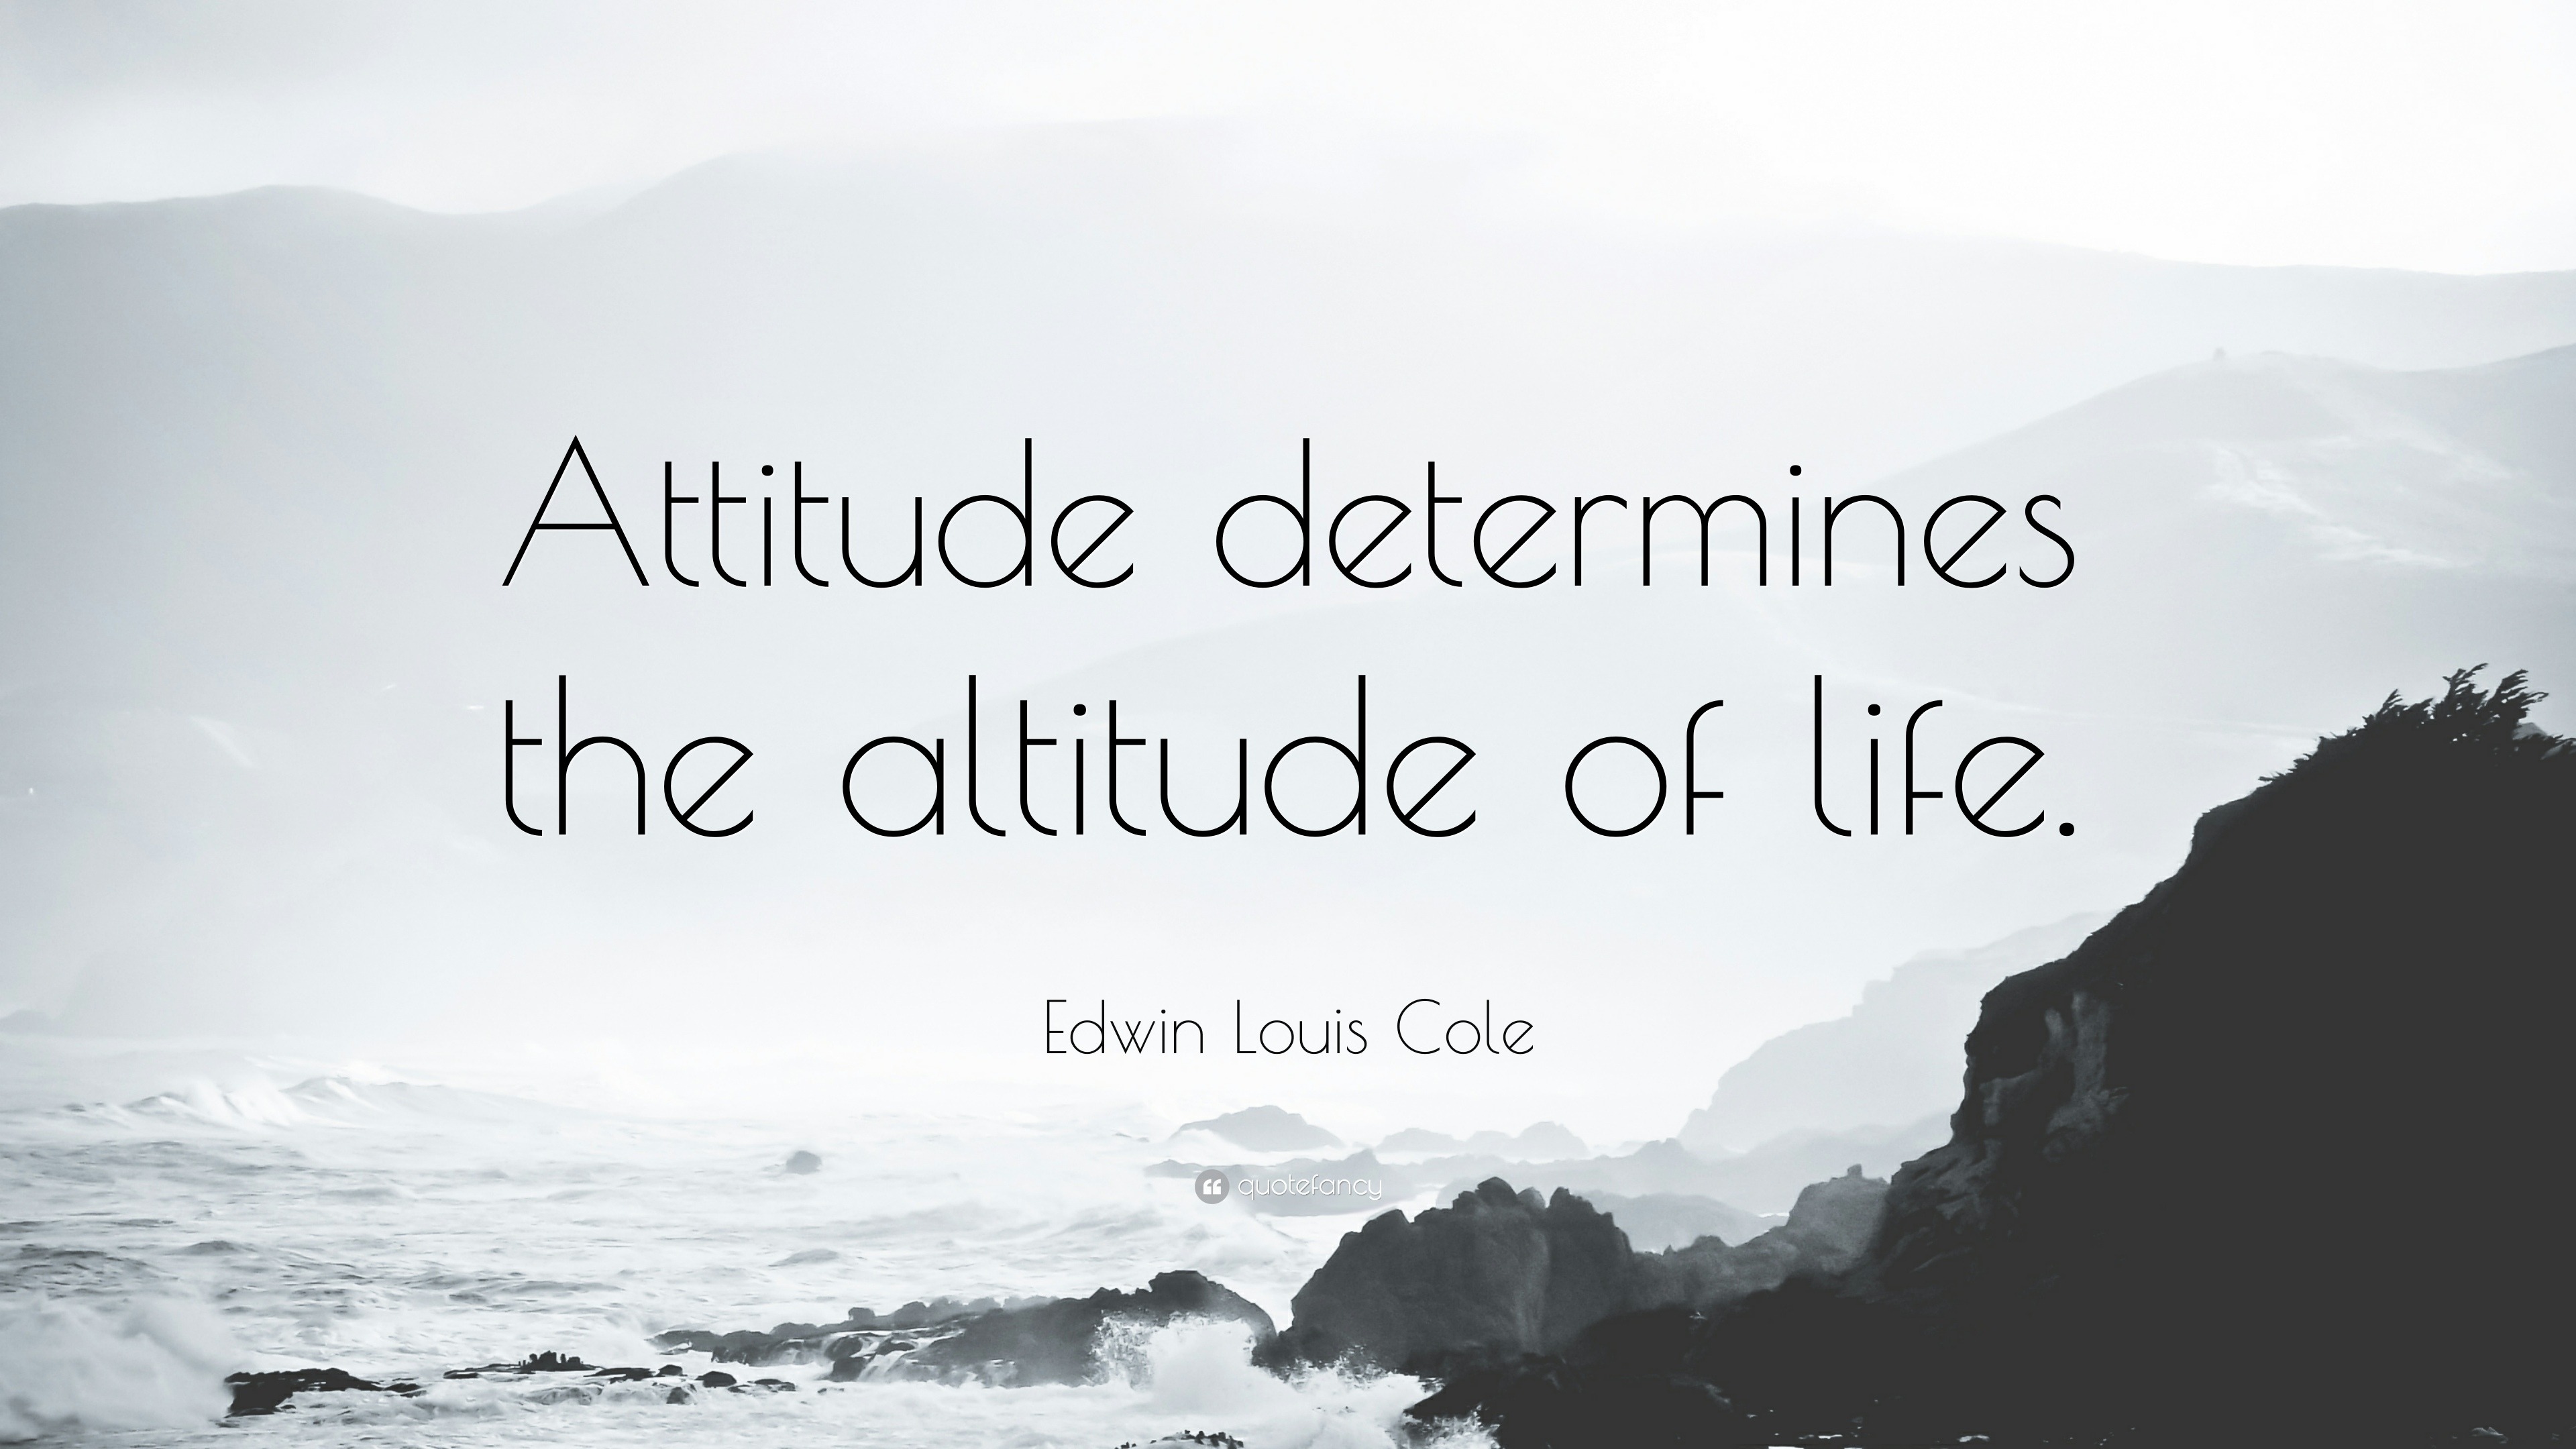 attitude determines altitude essay